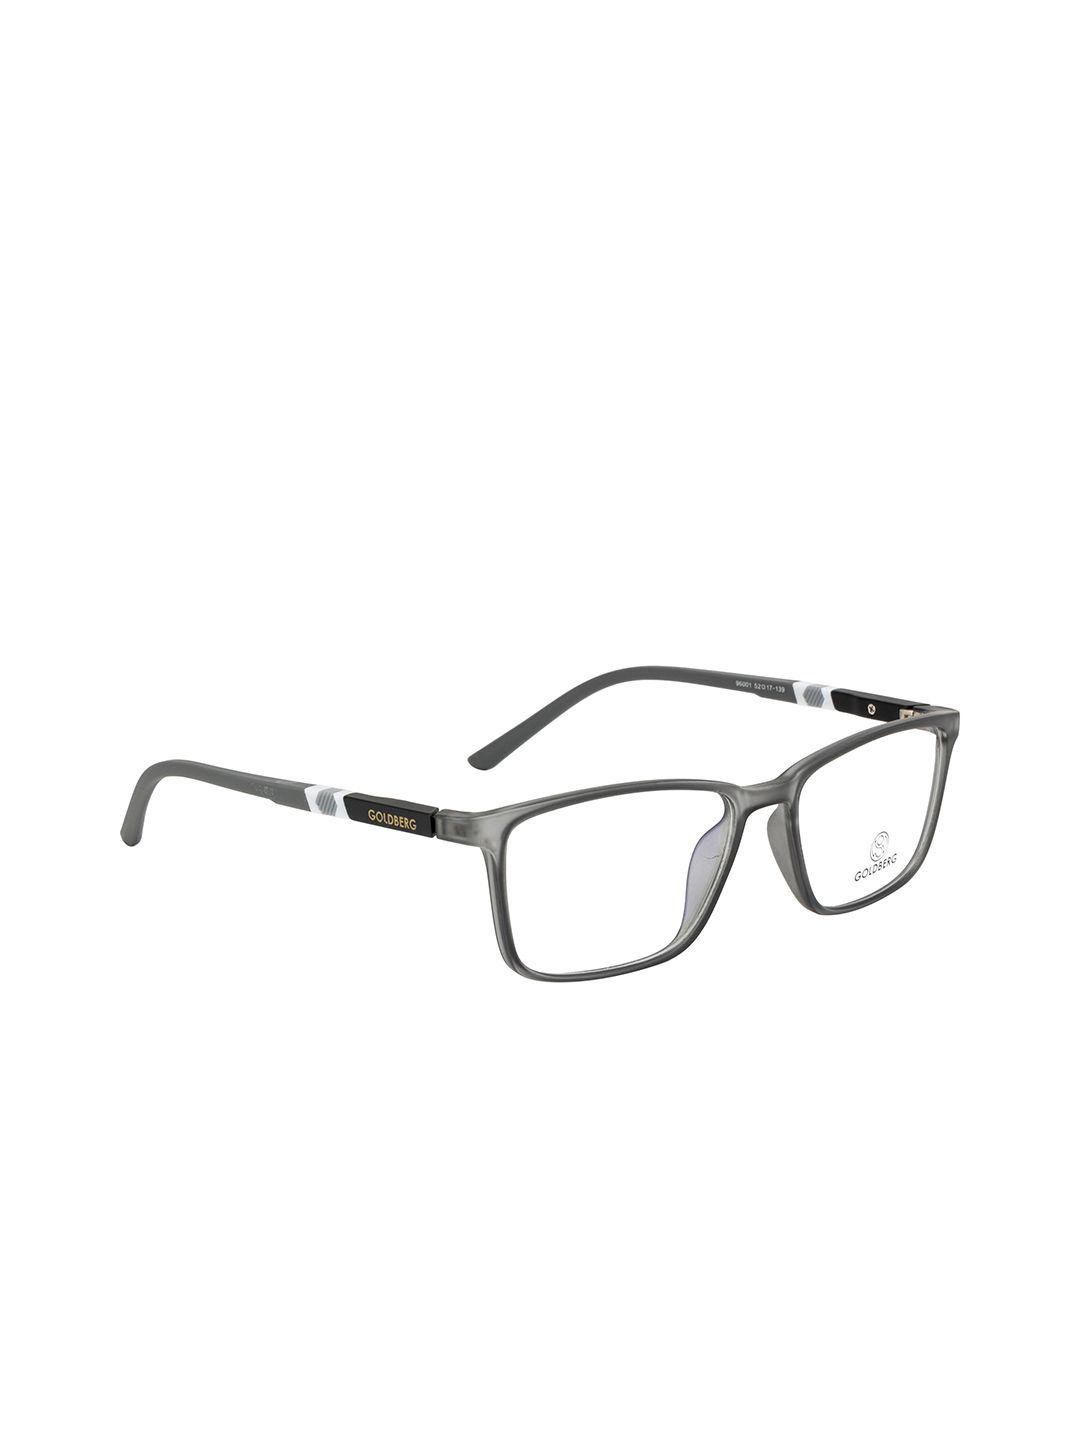 gold berg unisex grey & white abstract full rim wayfarer frames eyeglasses